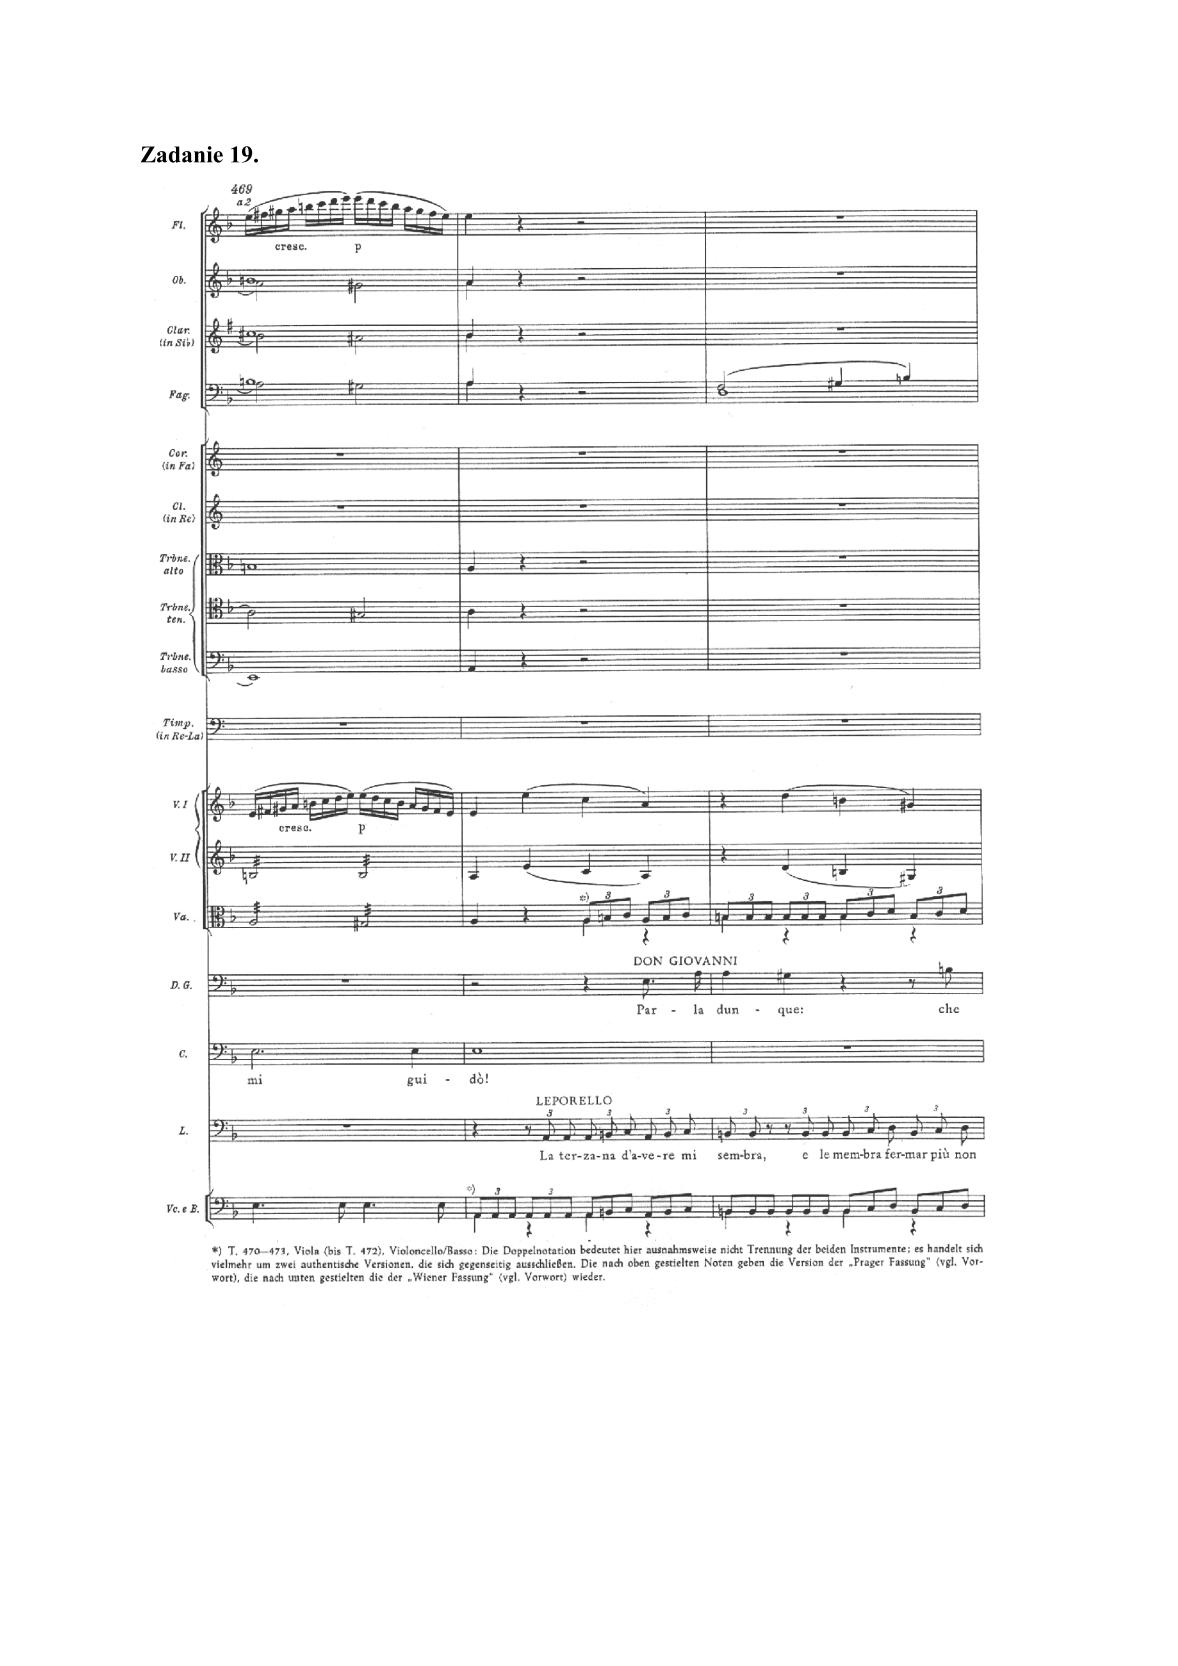 historia-muzyki-przykladowe-nuty-poziom-rozszerzony-matura-2014-str.21